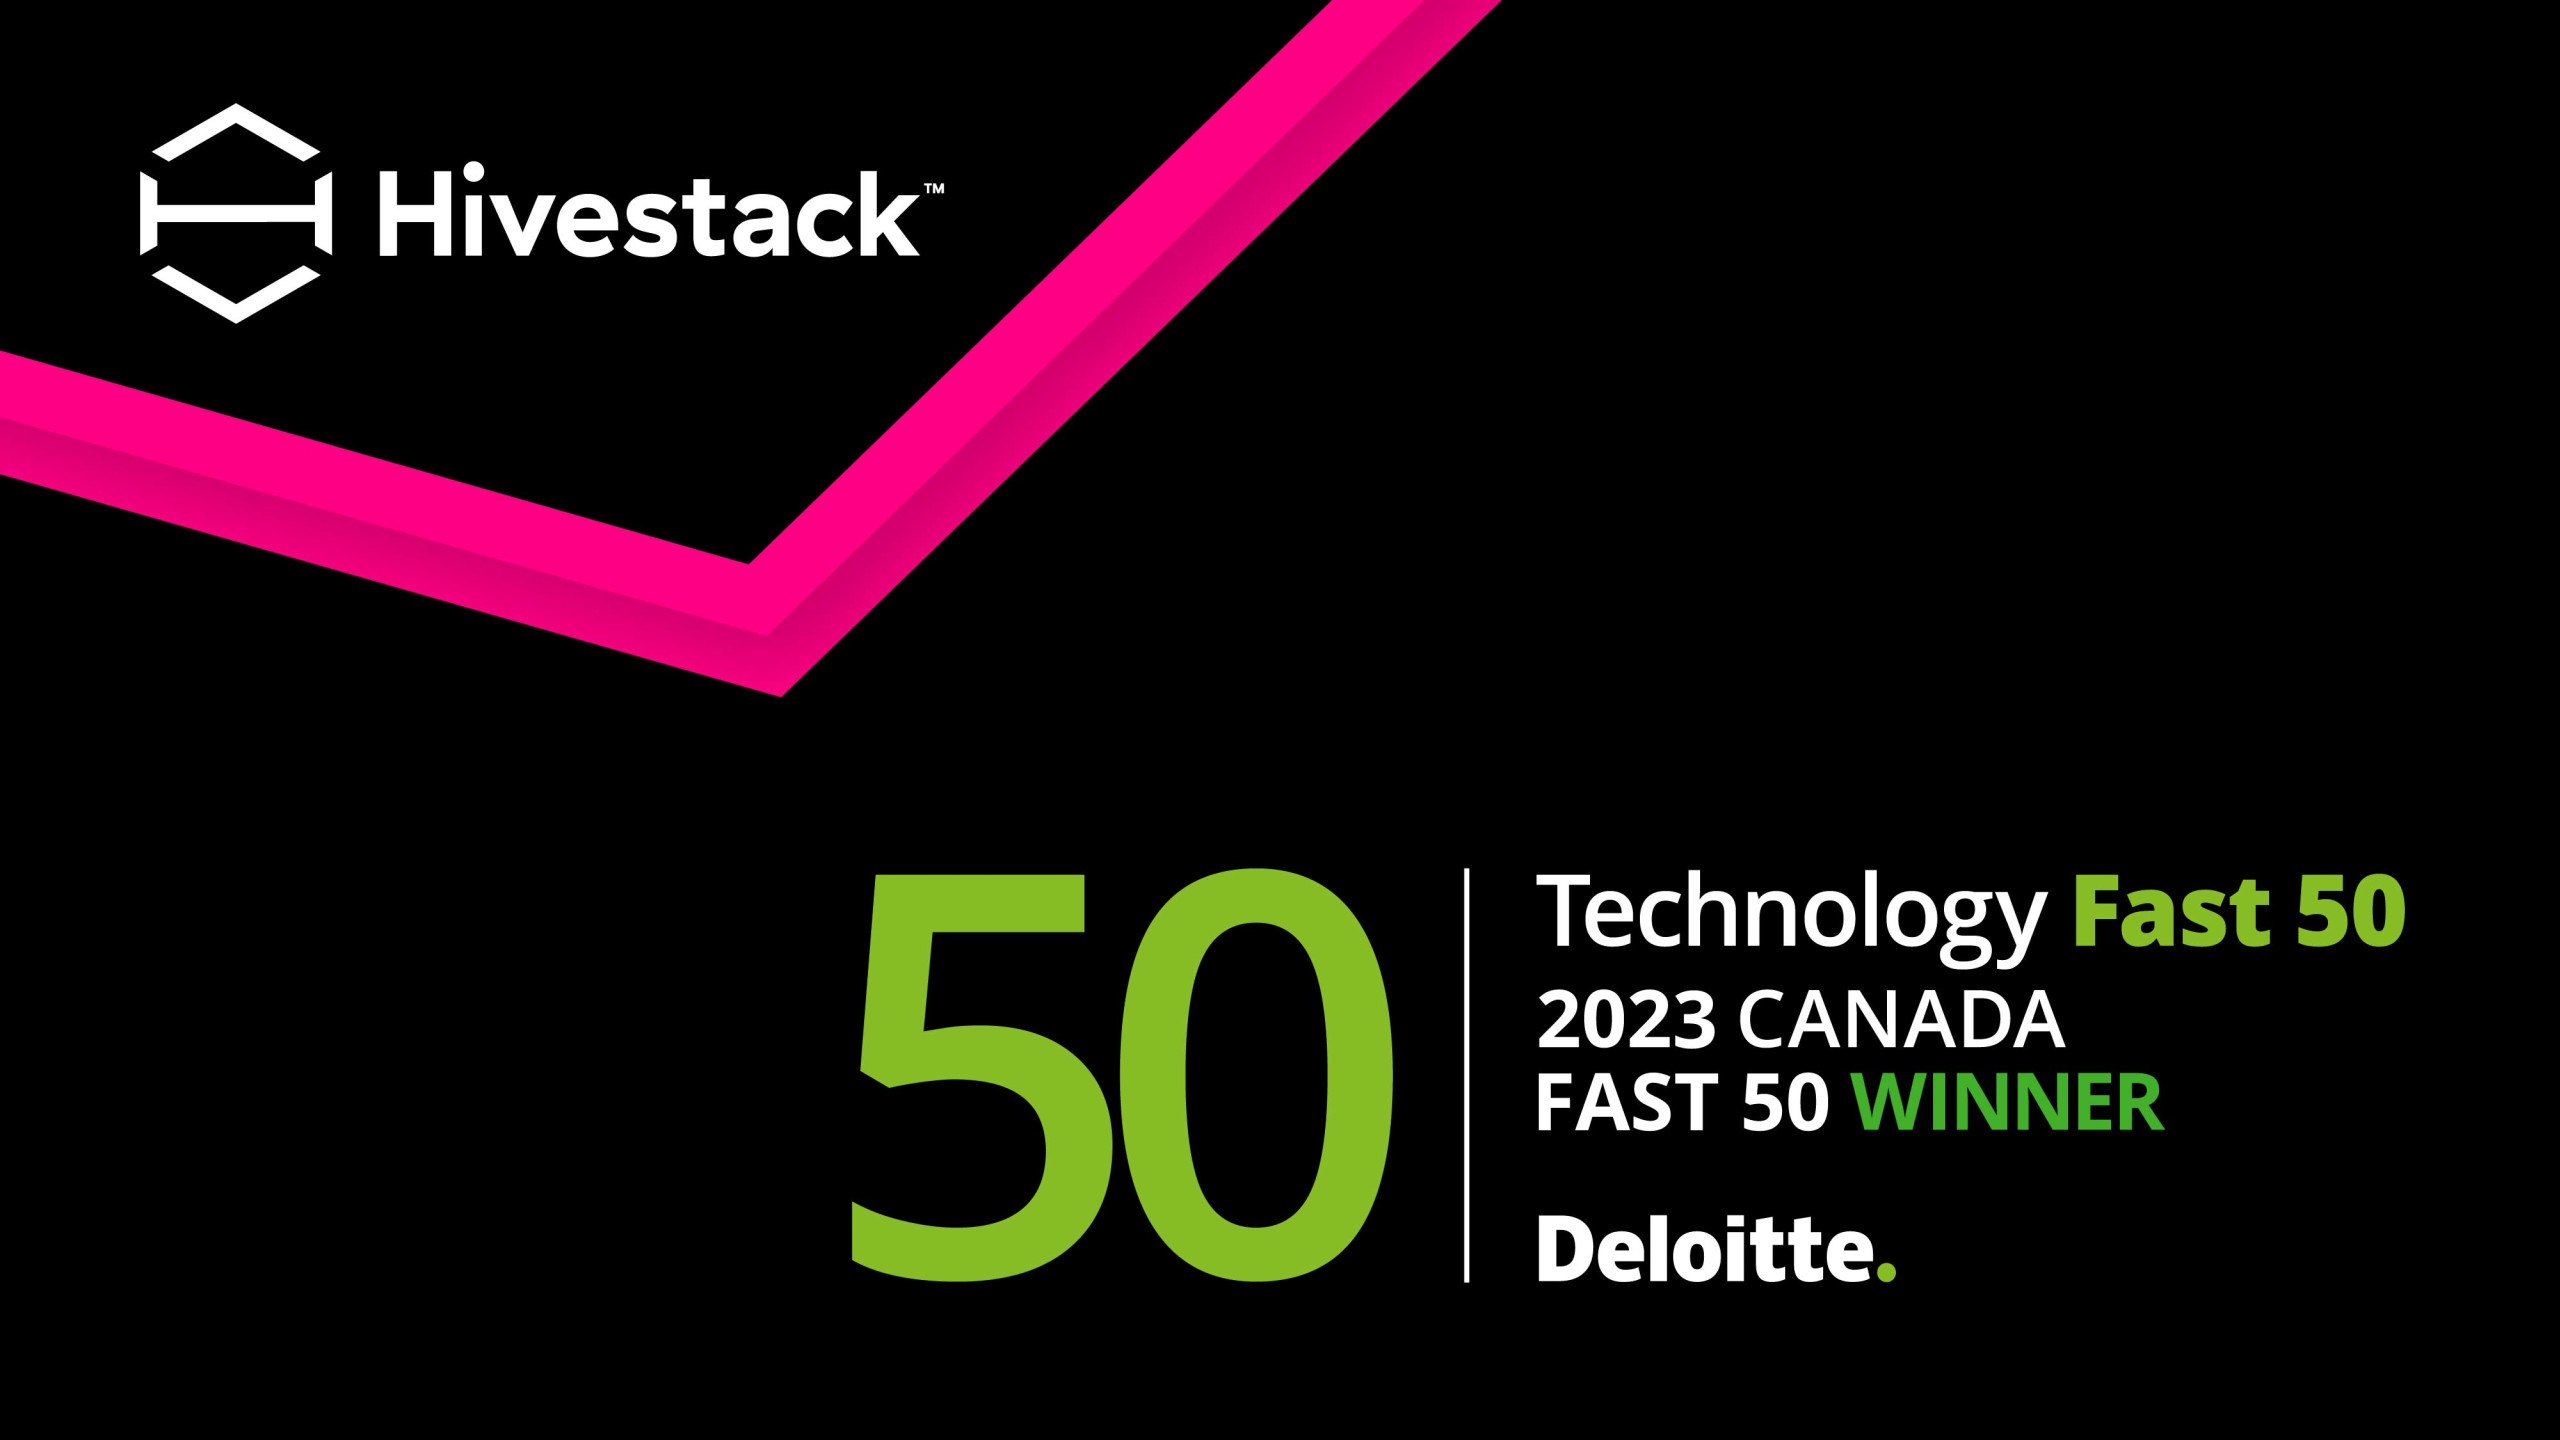 Hivestack a été nommée au palmarès Technologie Fast 50MC 2023 de Deloitte pour la croissance rapide de ses revenus, son esprit d’entrepreneuriat et son innovation audacieuse.